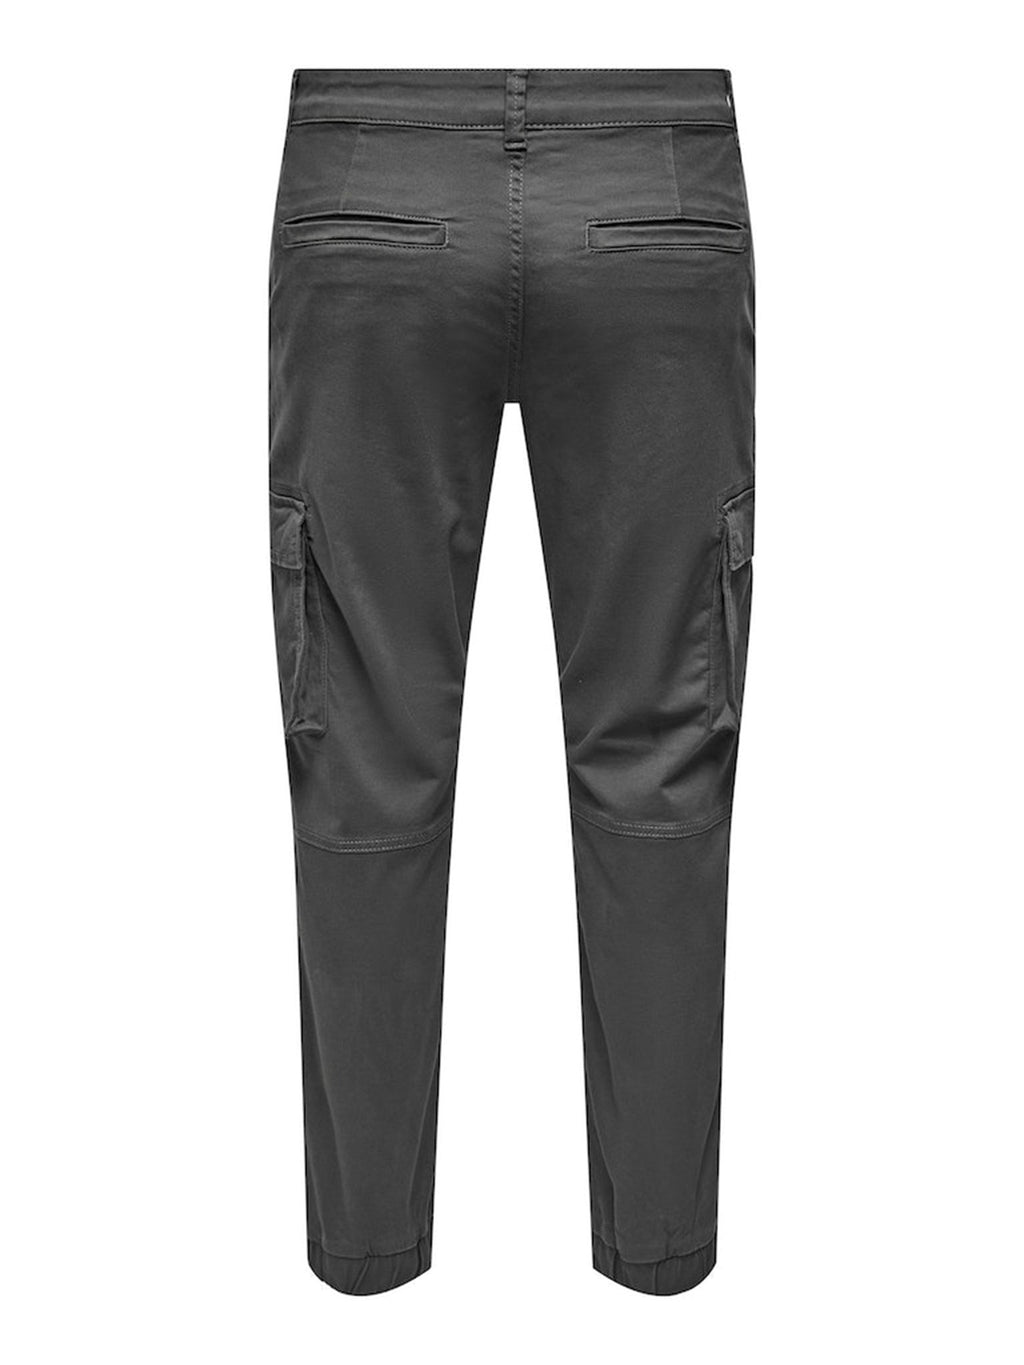 凸轮级货物裤 - 灰色细条纹